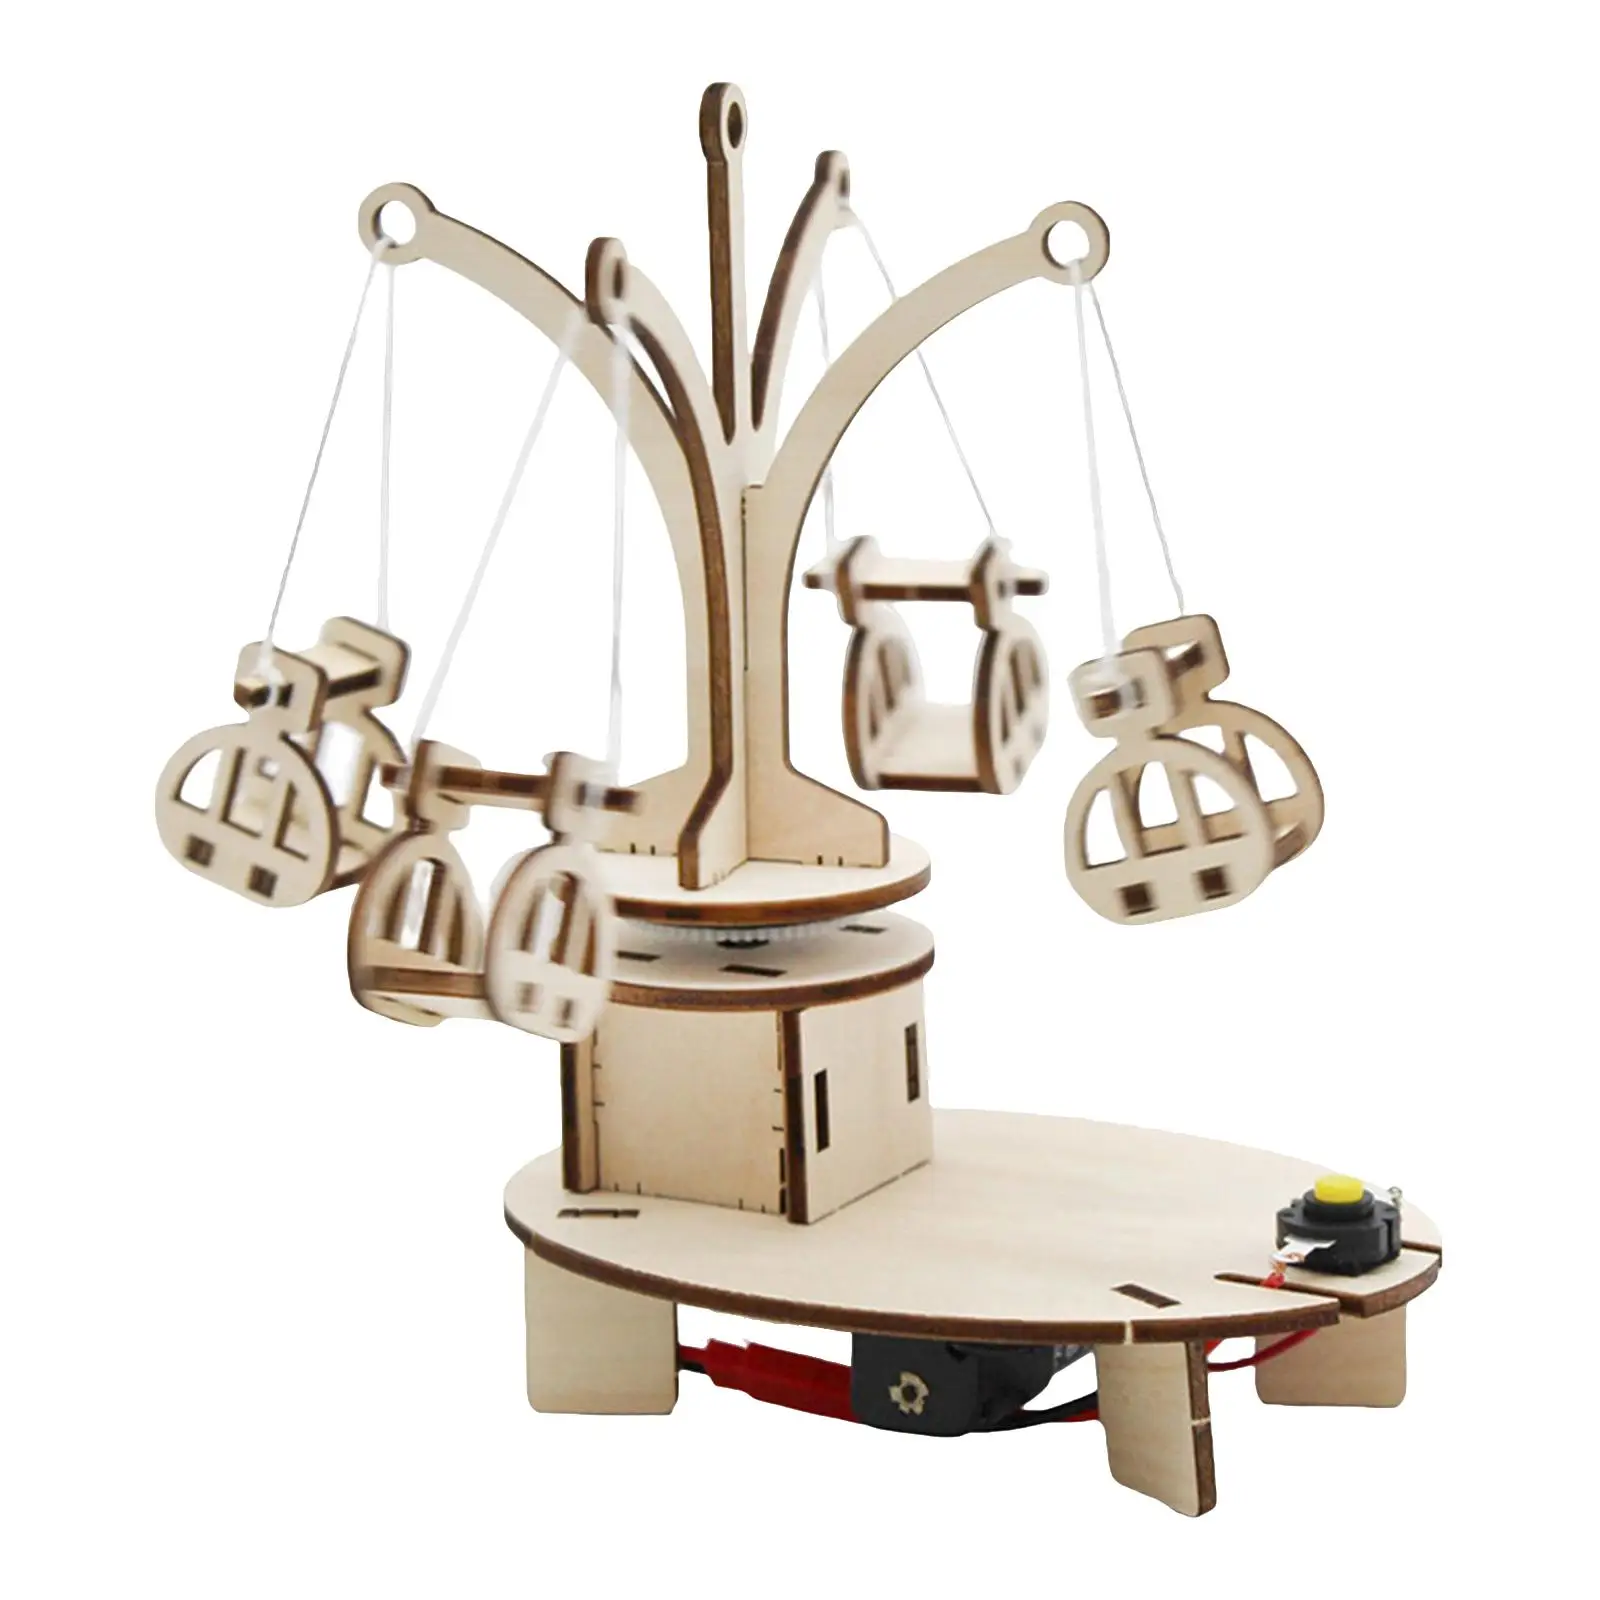 

Деревянный вращающийся стул в сборе, необходимая модель «сделай сам», карусель, игровой набор, пазл